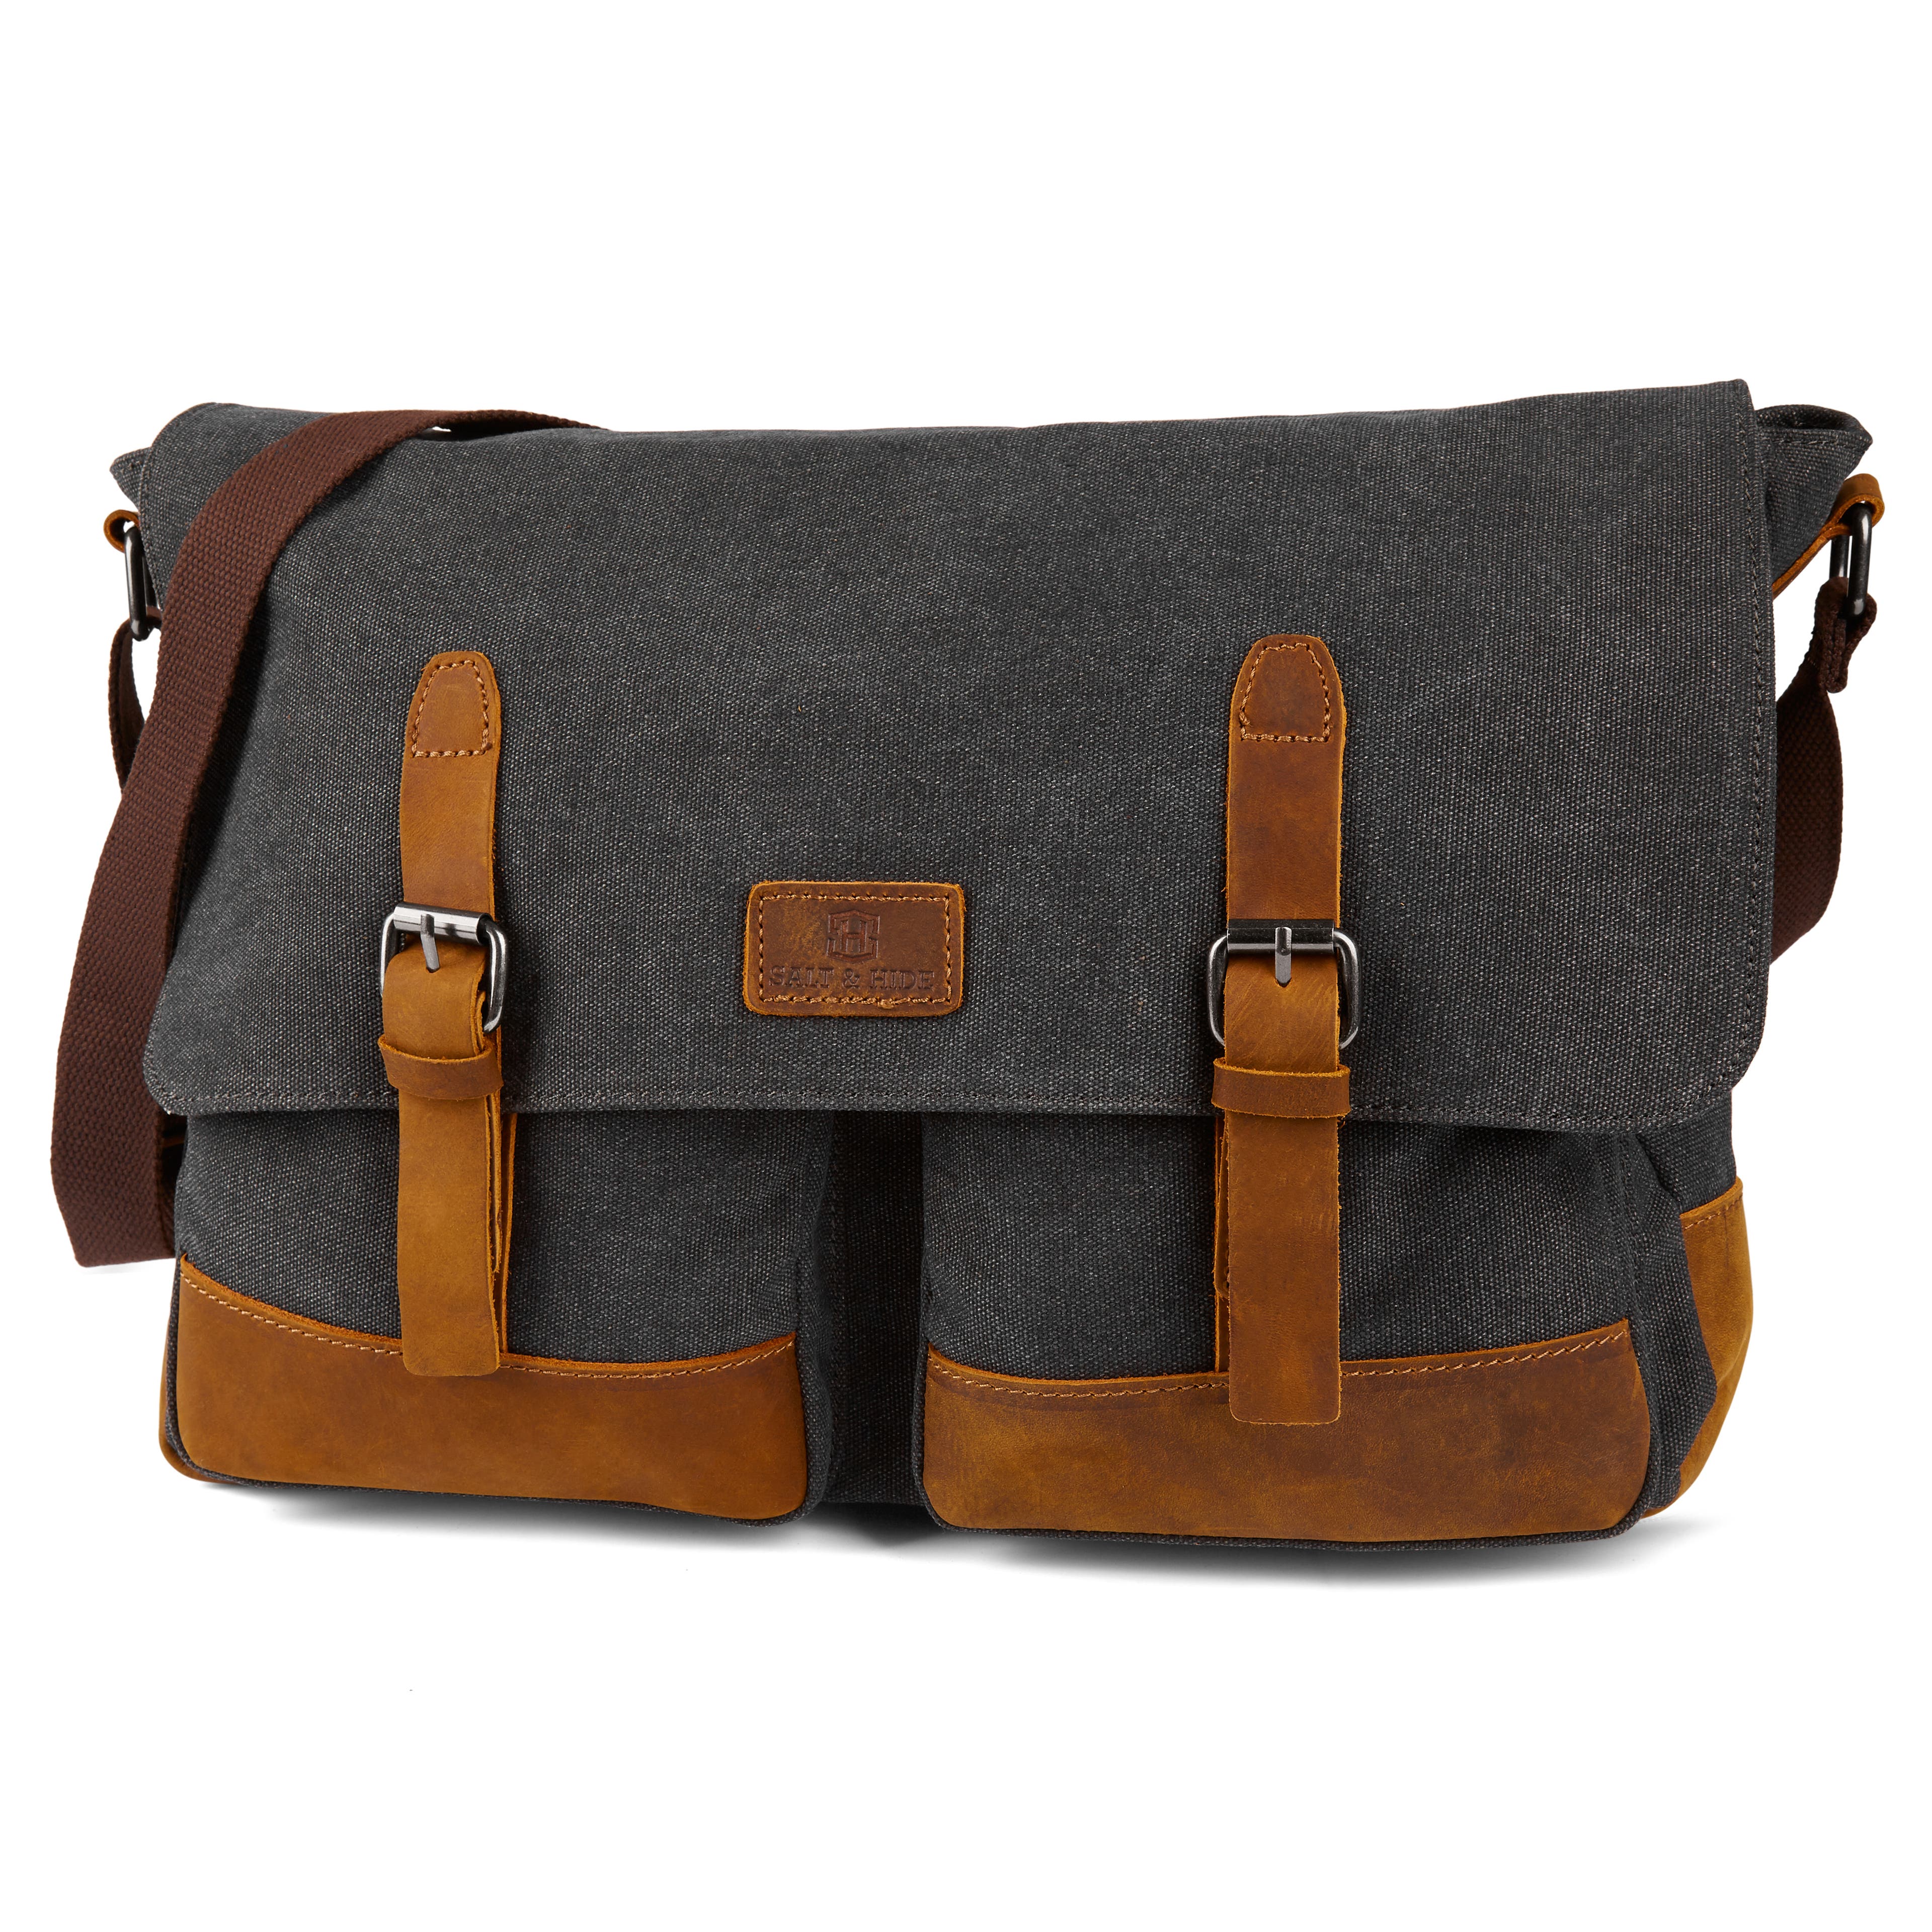 Spencer Grey & Tan Laptop Bag